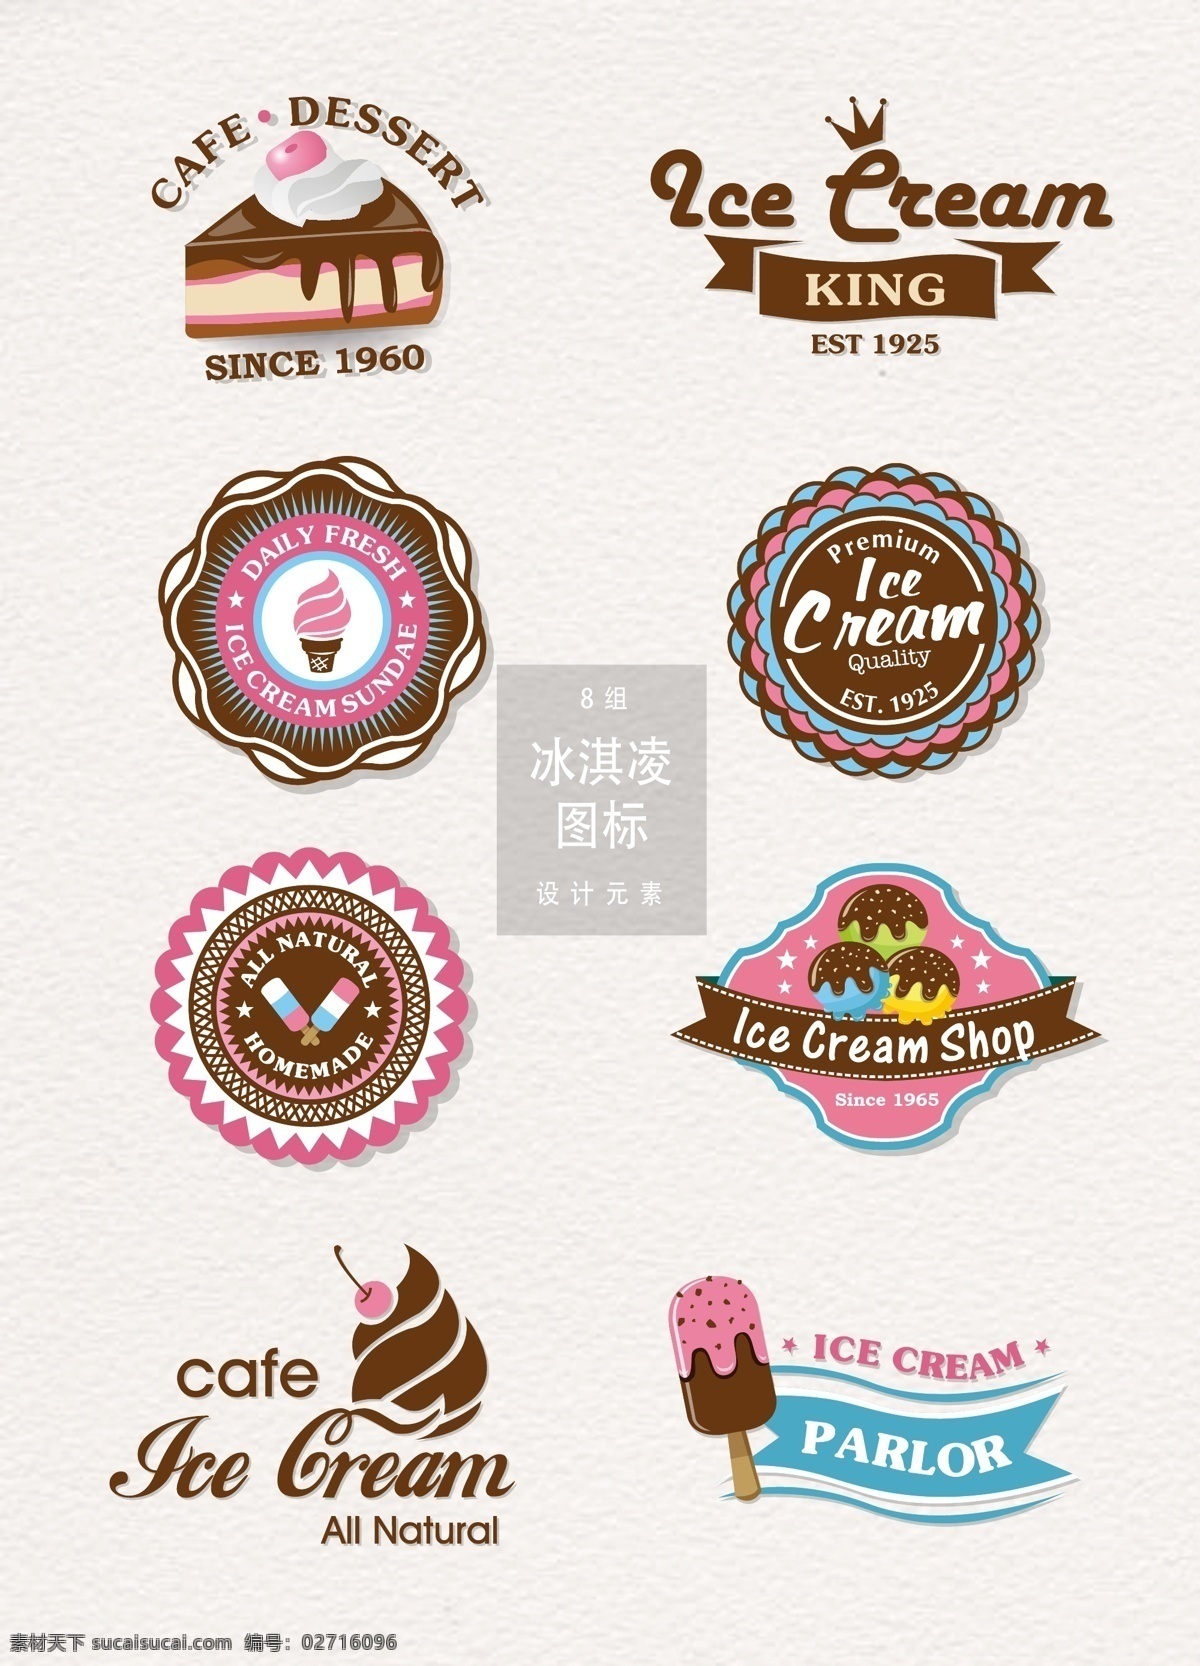 创意 冰淇凌 图标 元素 图标设计 矢量素材 雪糕 蛋糕 ai素材 冰淇凌图标 店 logo